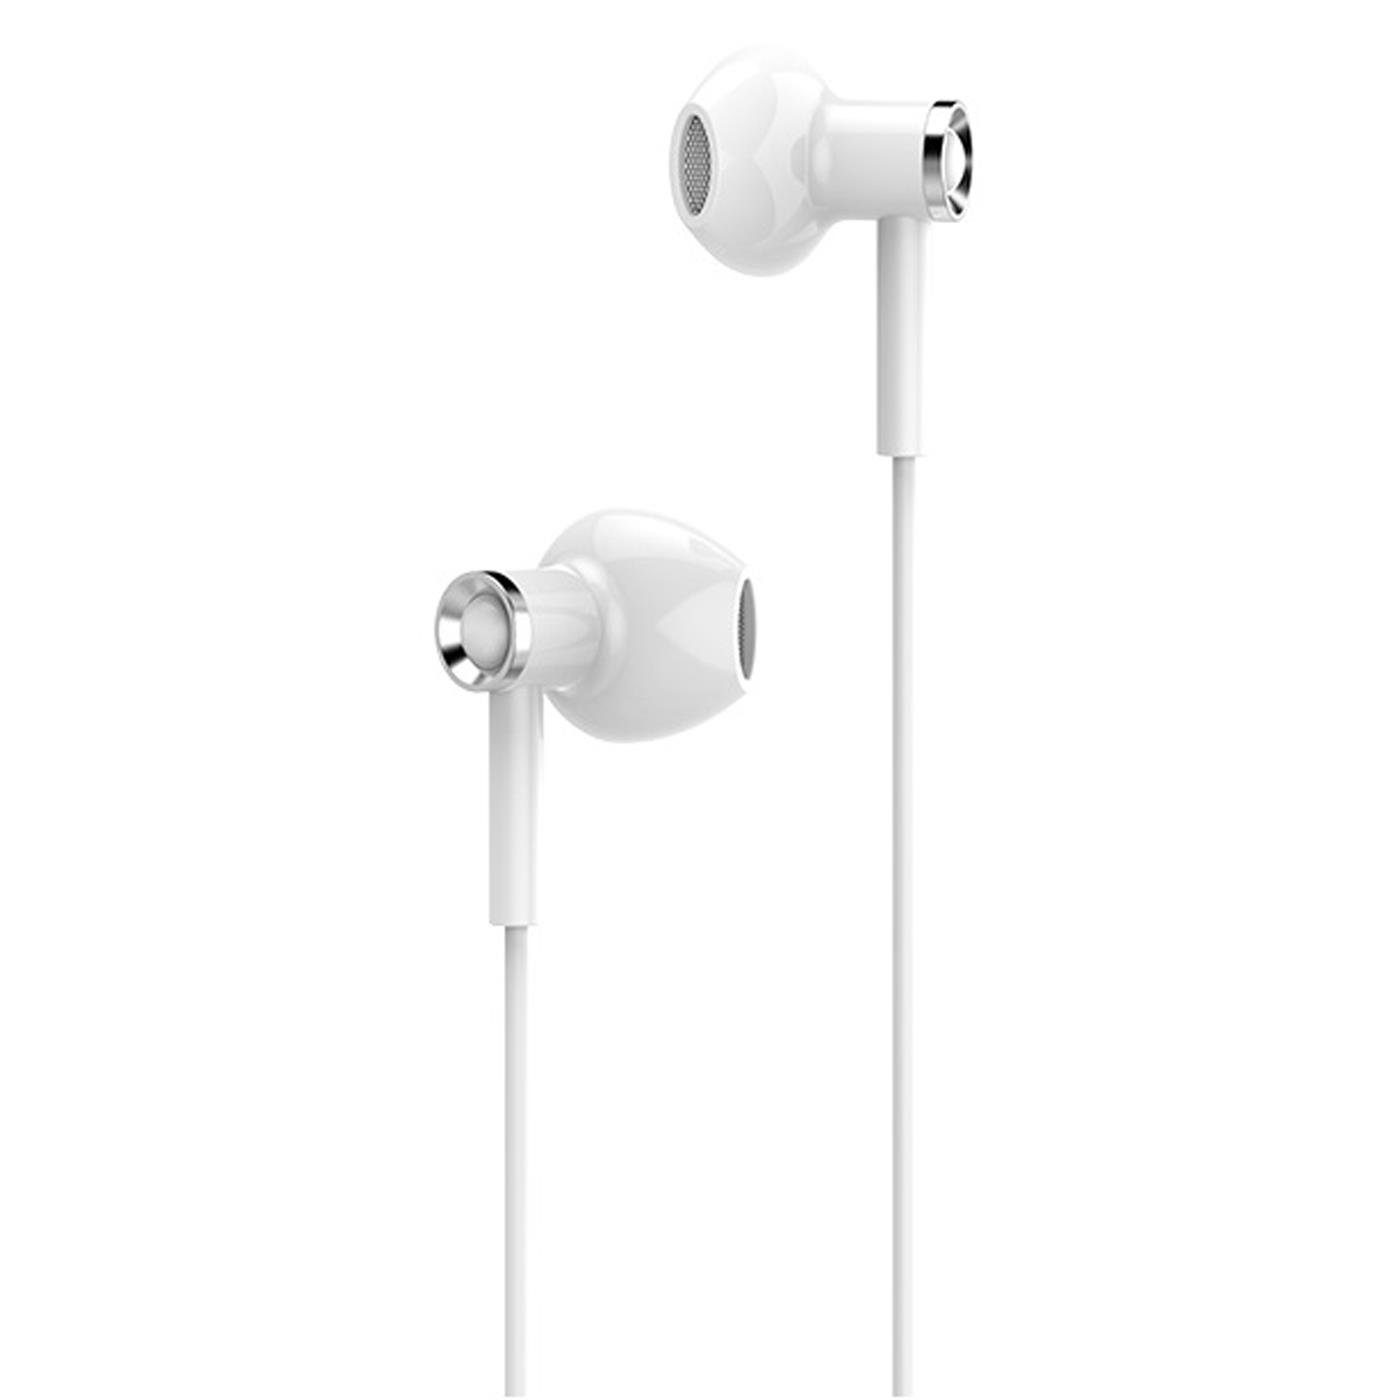 HOCO M47 Canorous 3,5mm Weiss Klinke Ear Beats) (Köpfhörer mit Mikrofon mm 3.5 In Smartphone-Headset Klinke Headset